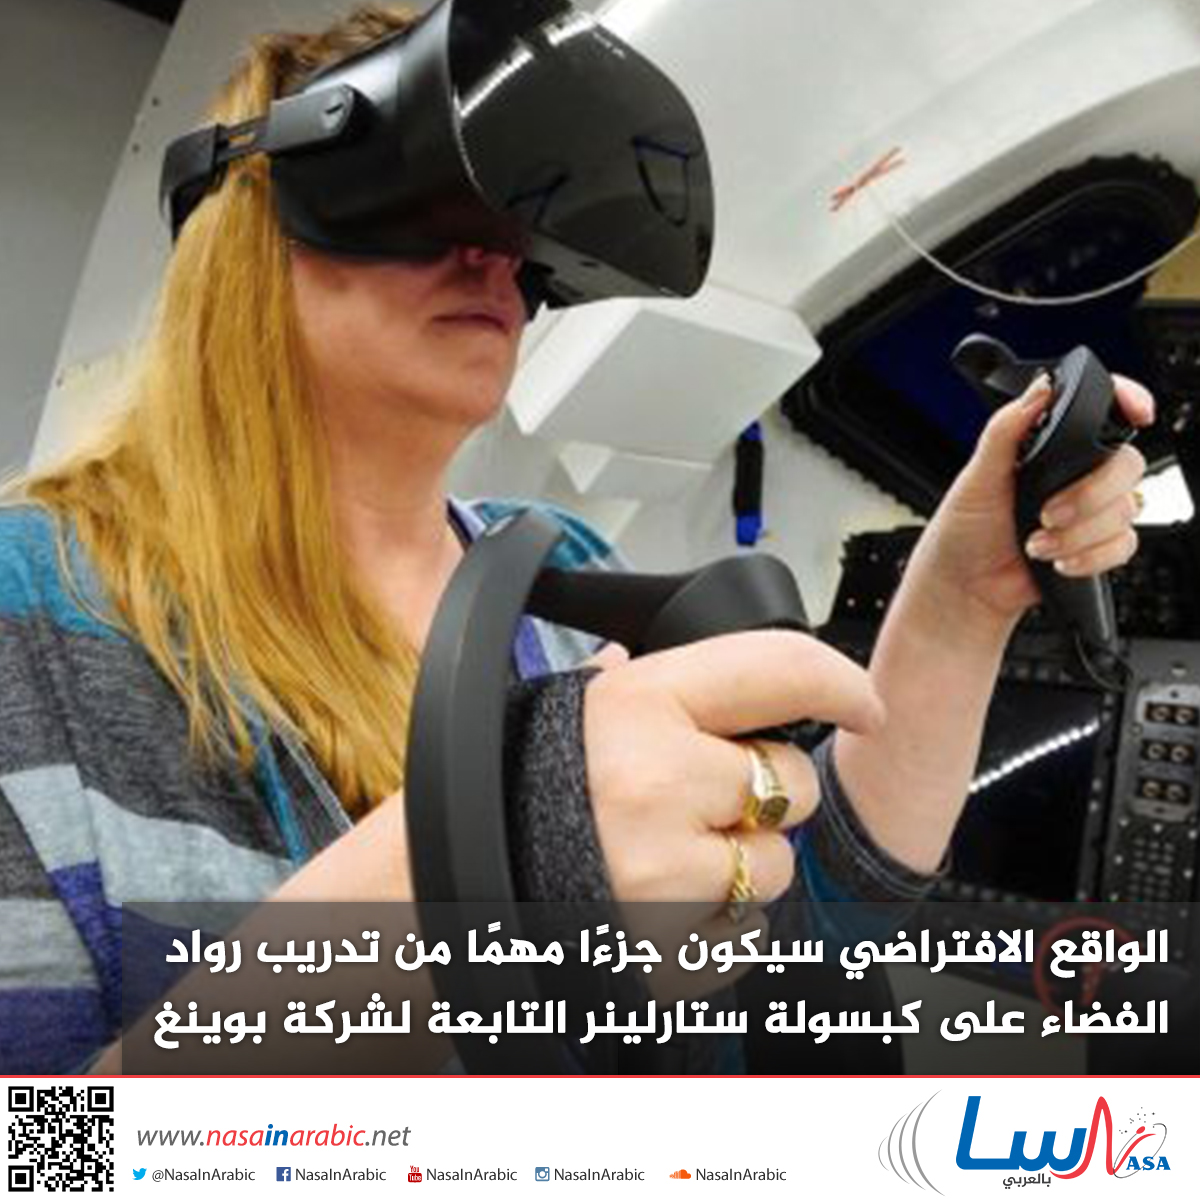 الواقع الافتراضي سيكون جزءًا مهمًا من تدريب رواد الفضاء على كبسولة ستارلينر التابعة لشركة بوينغ